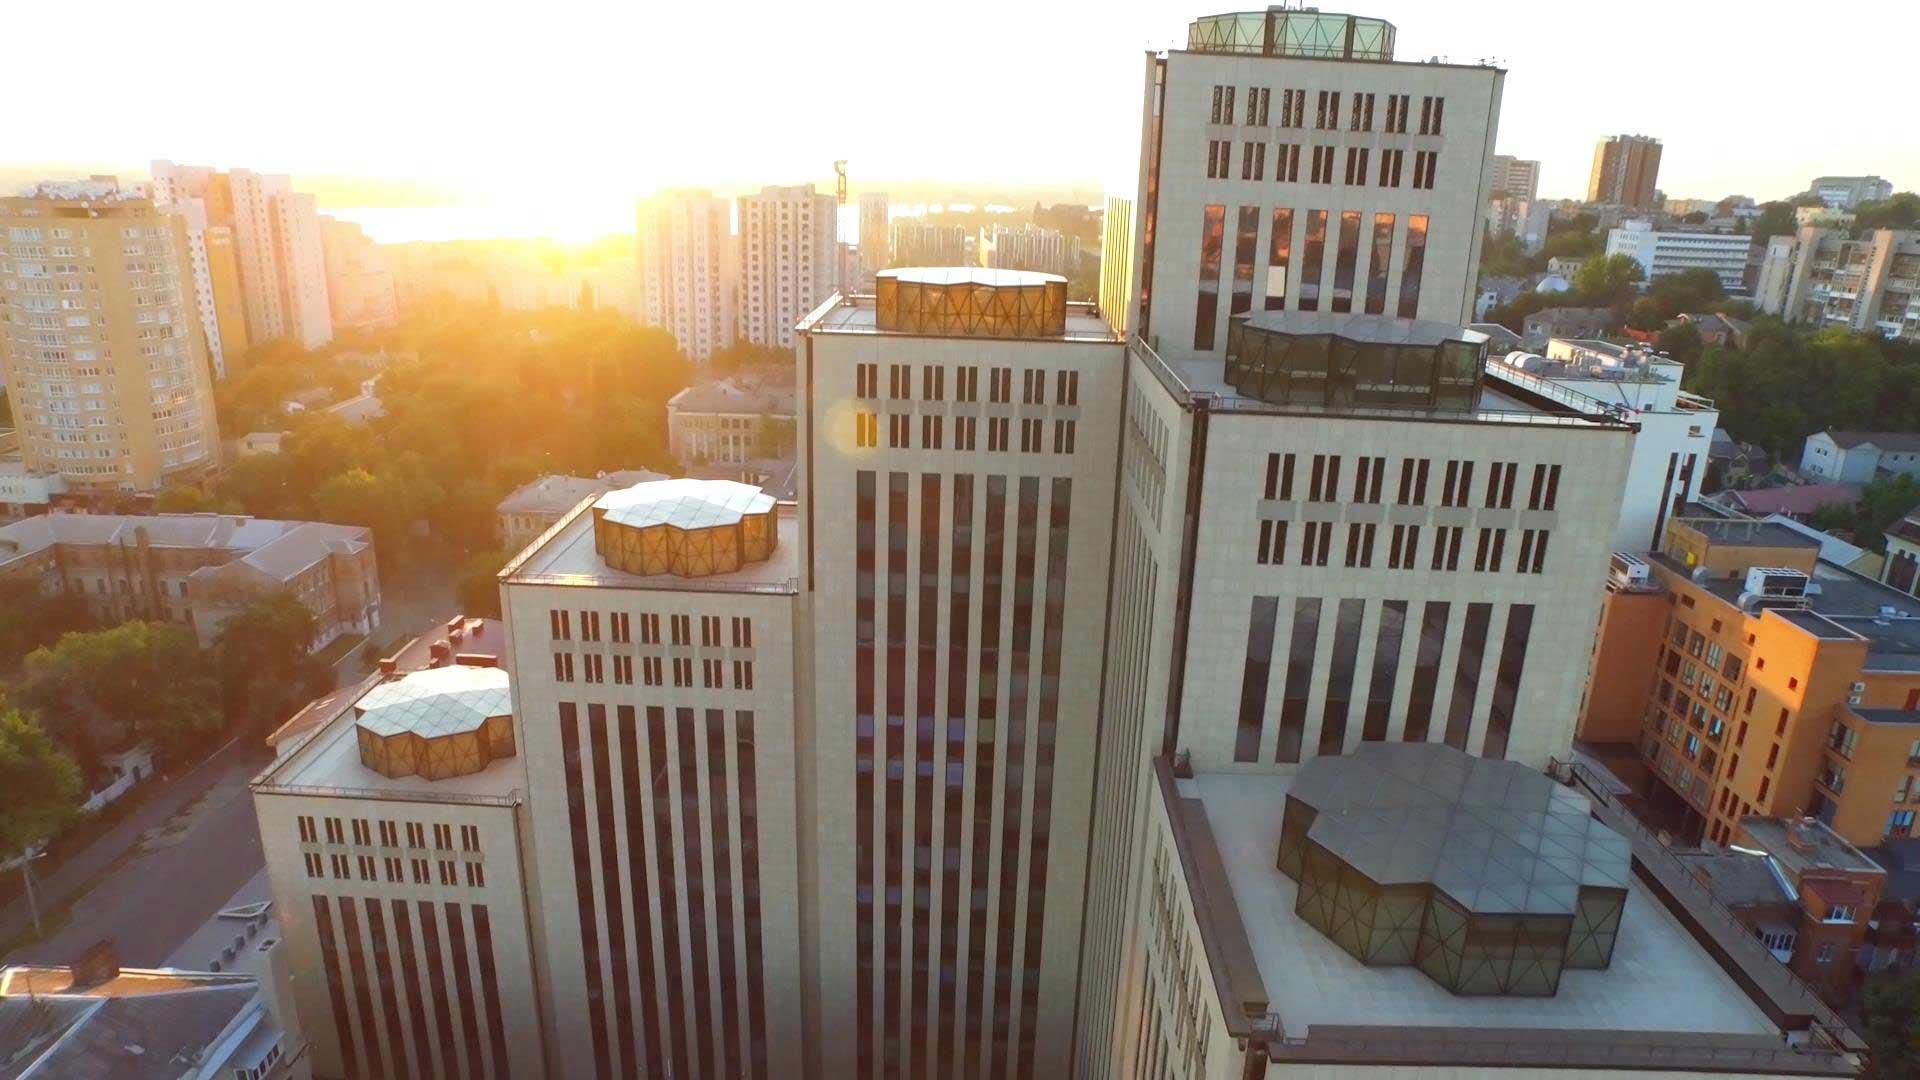 Vogelperspektive auf eine Stadt, im Vordergrund ein modernes Gebäude mit vielen hohen Türmen.